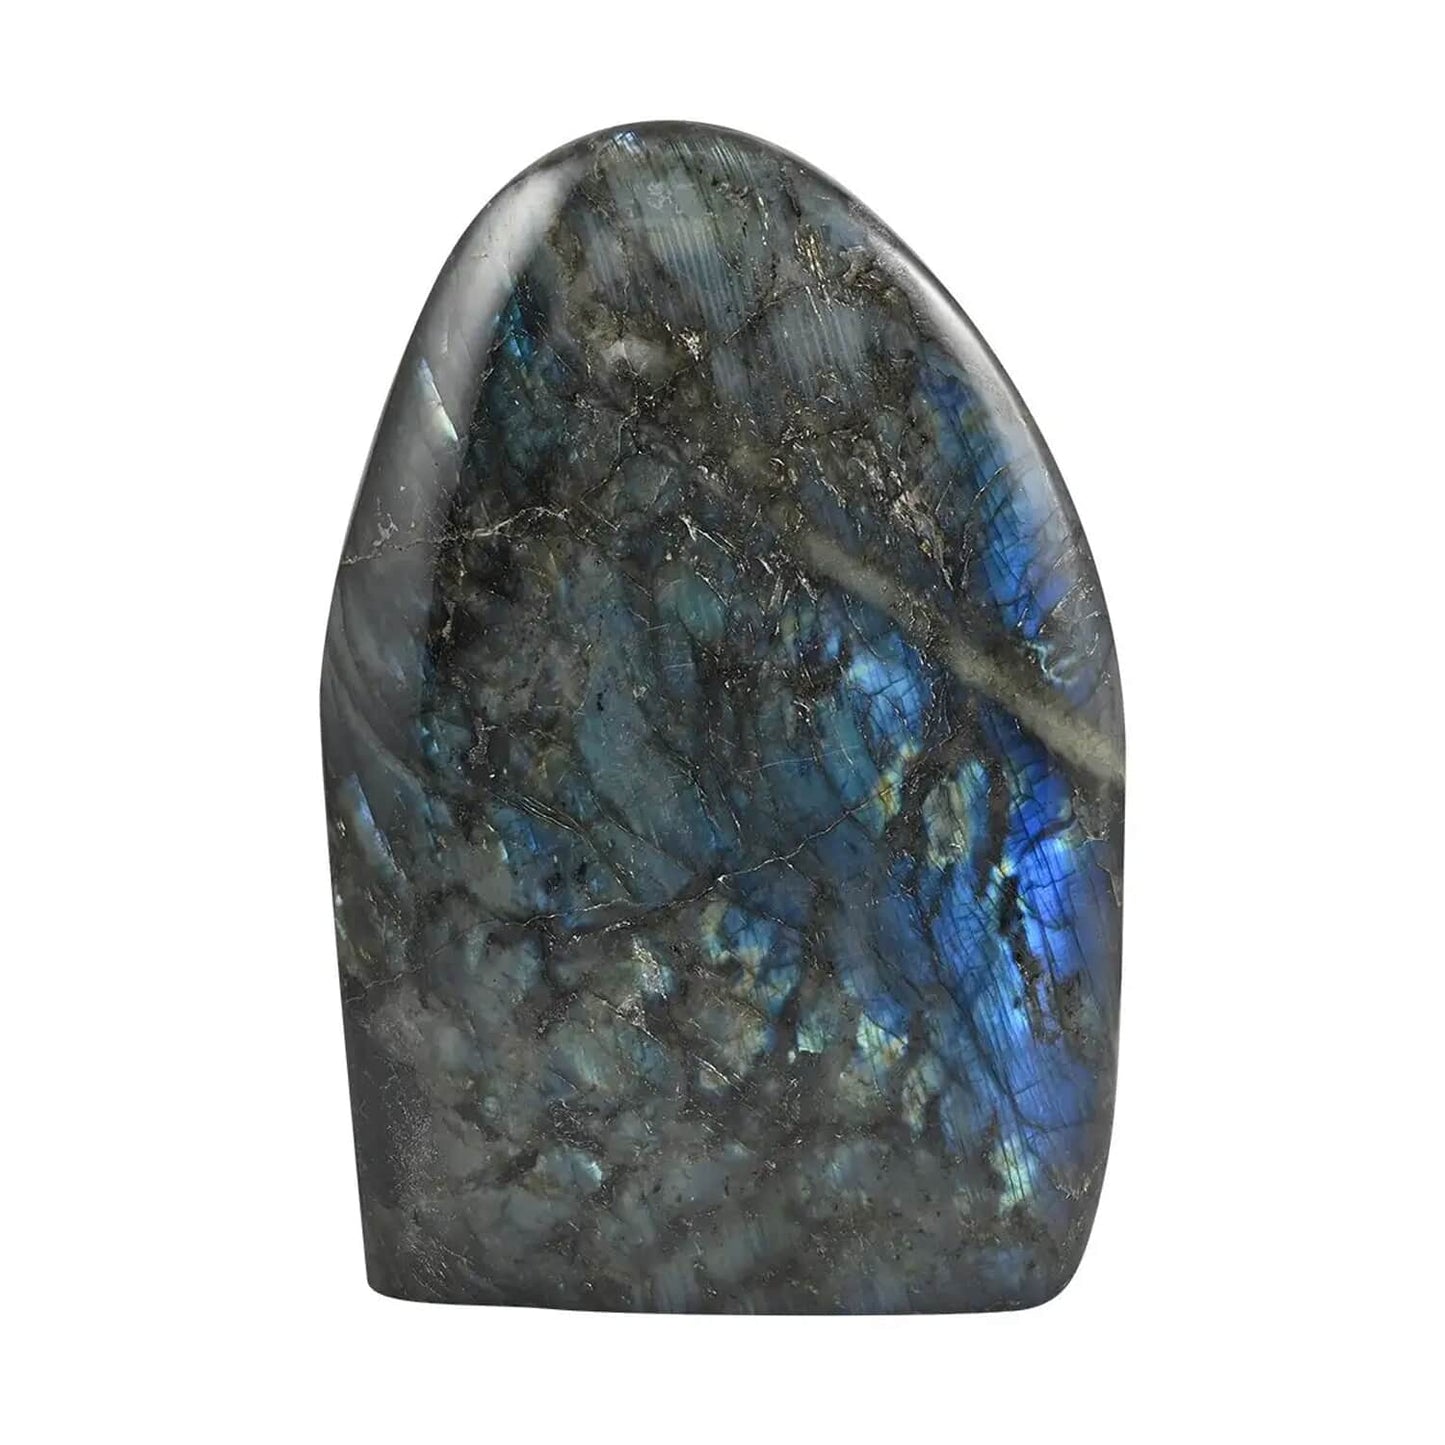 Gigantic Free Form Labradorite Crystal